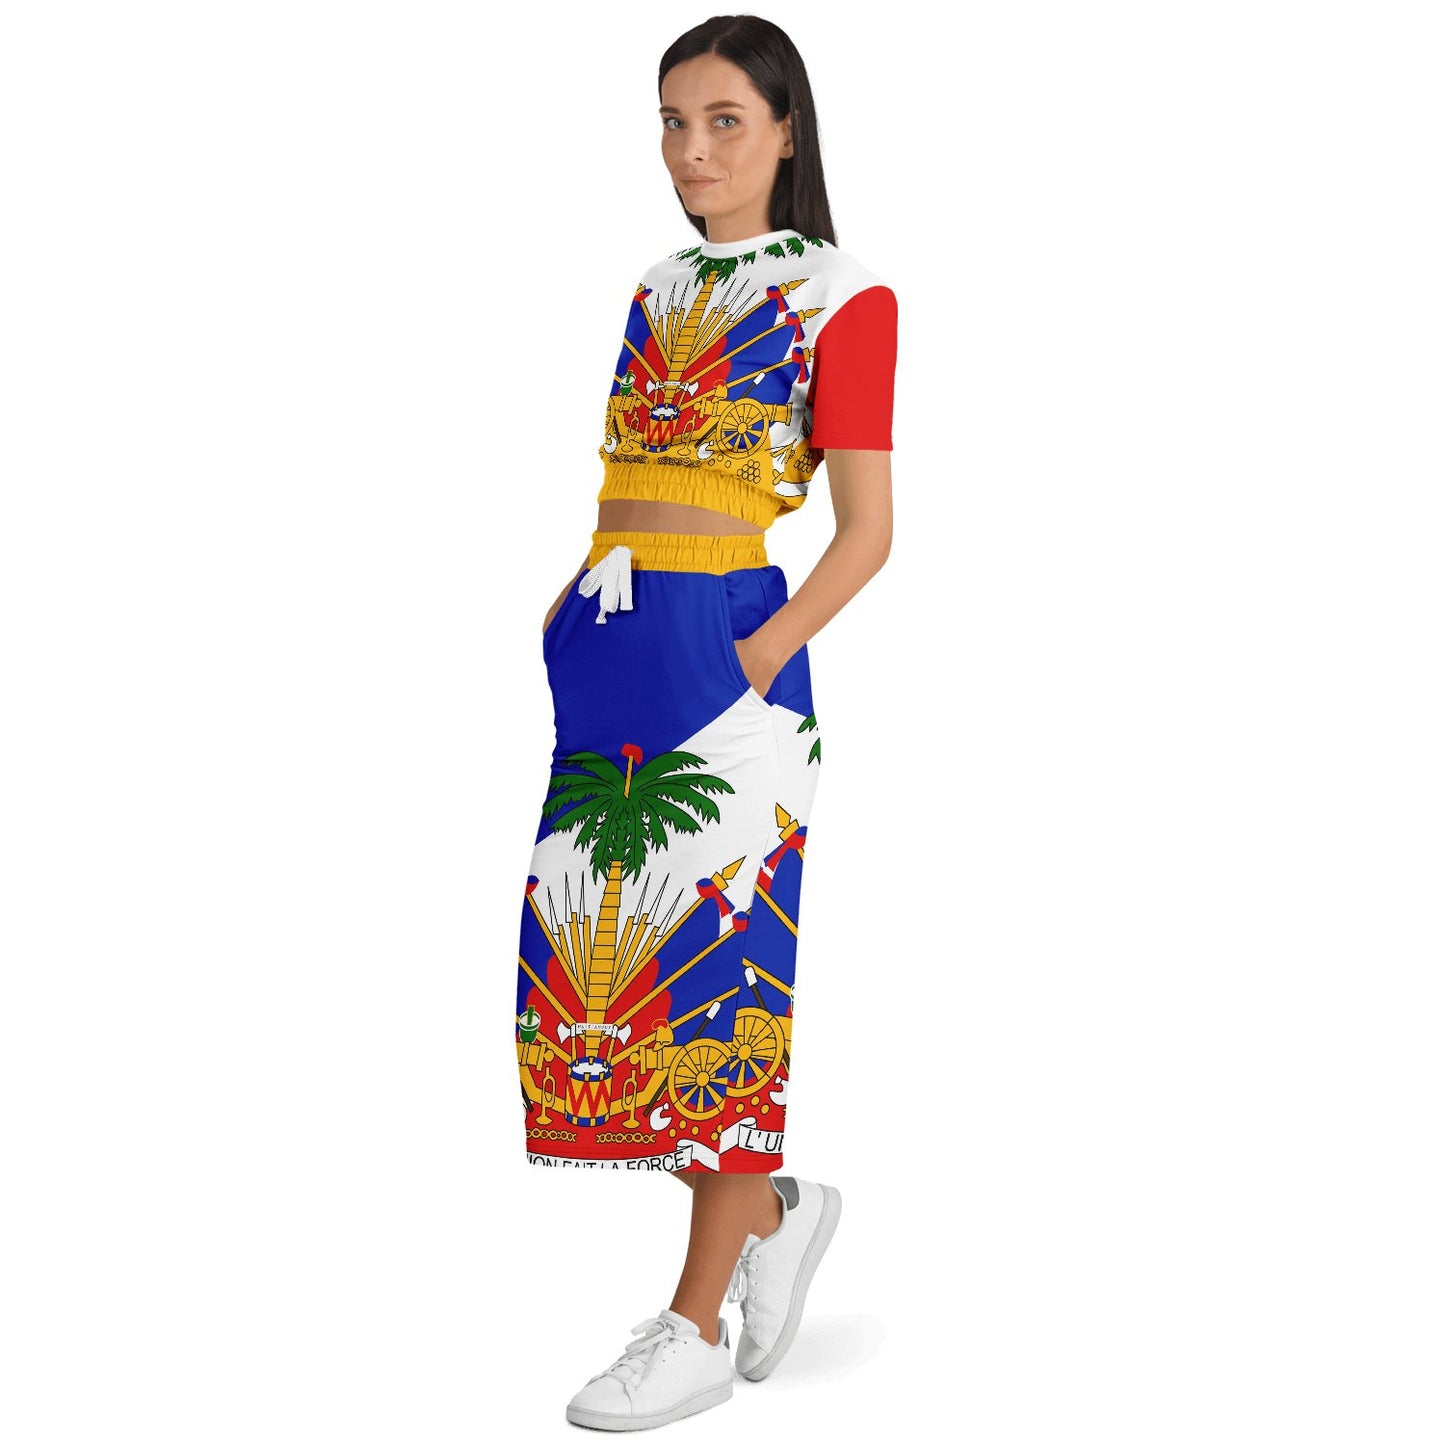 COAT OF ARMS OF HAITI Fashion Cropped Short Sleeve Sweatshirt and Long Pocket Skirt - Haitianbuy